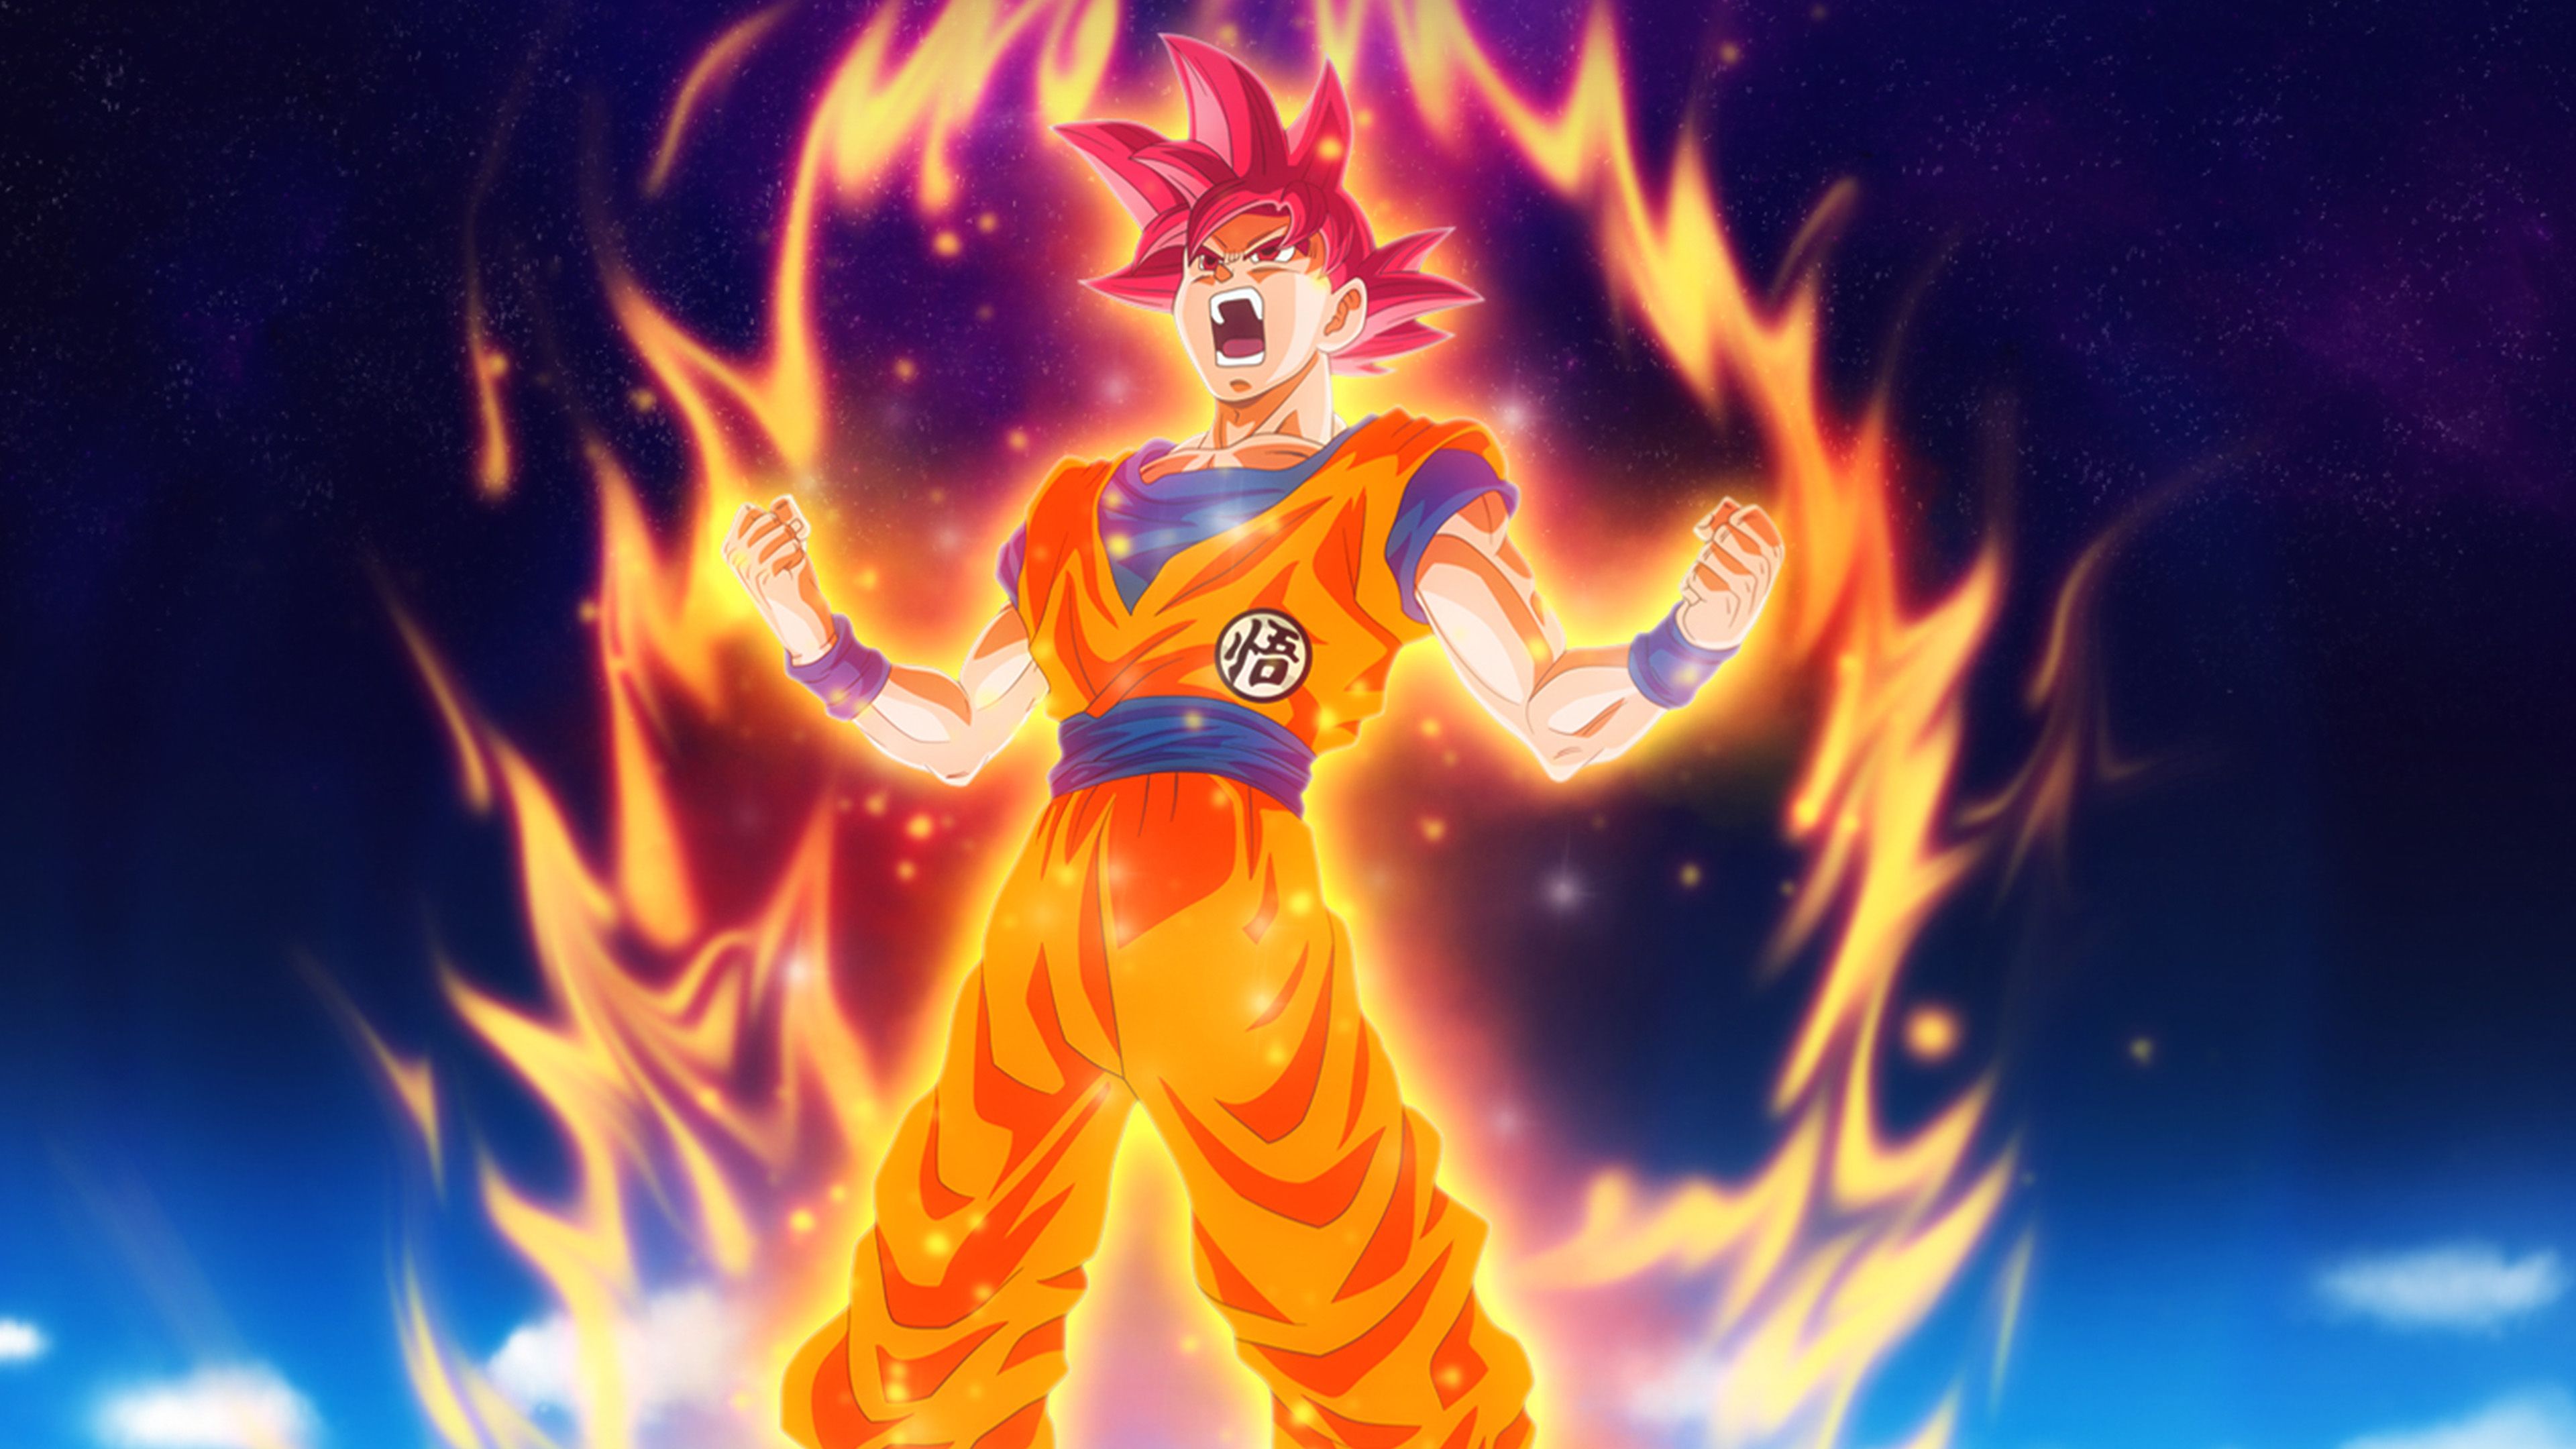 Dragon Ball Fire Art Illustration Hero Anime Wallpaper